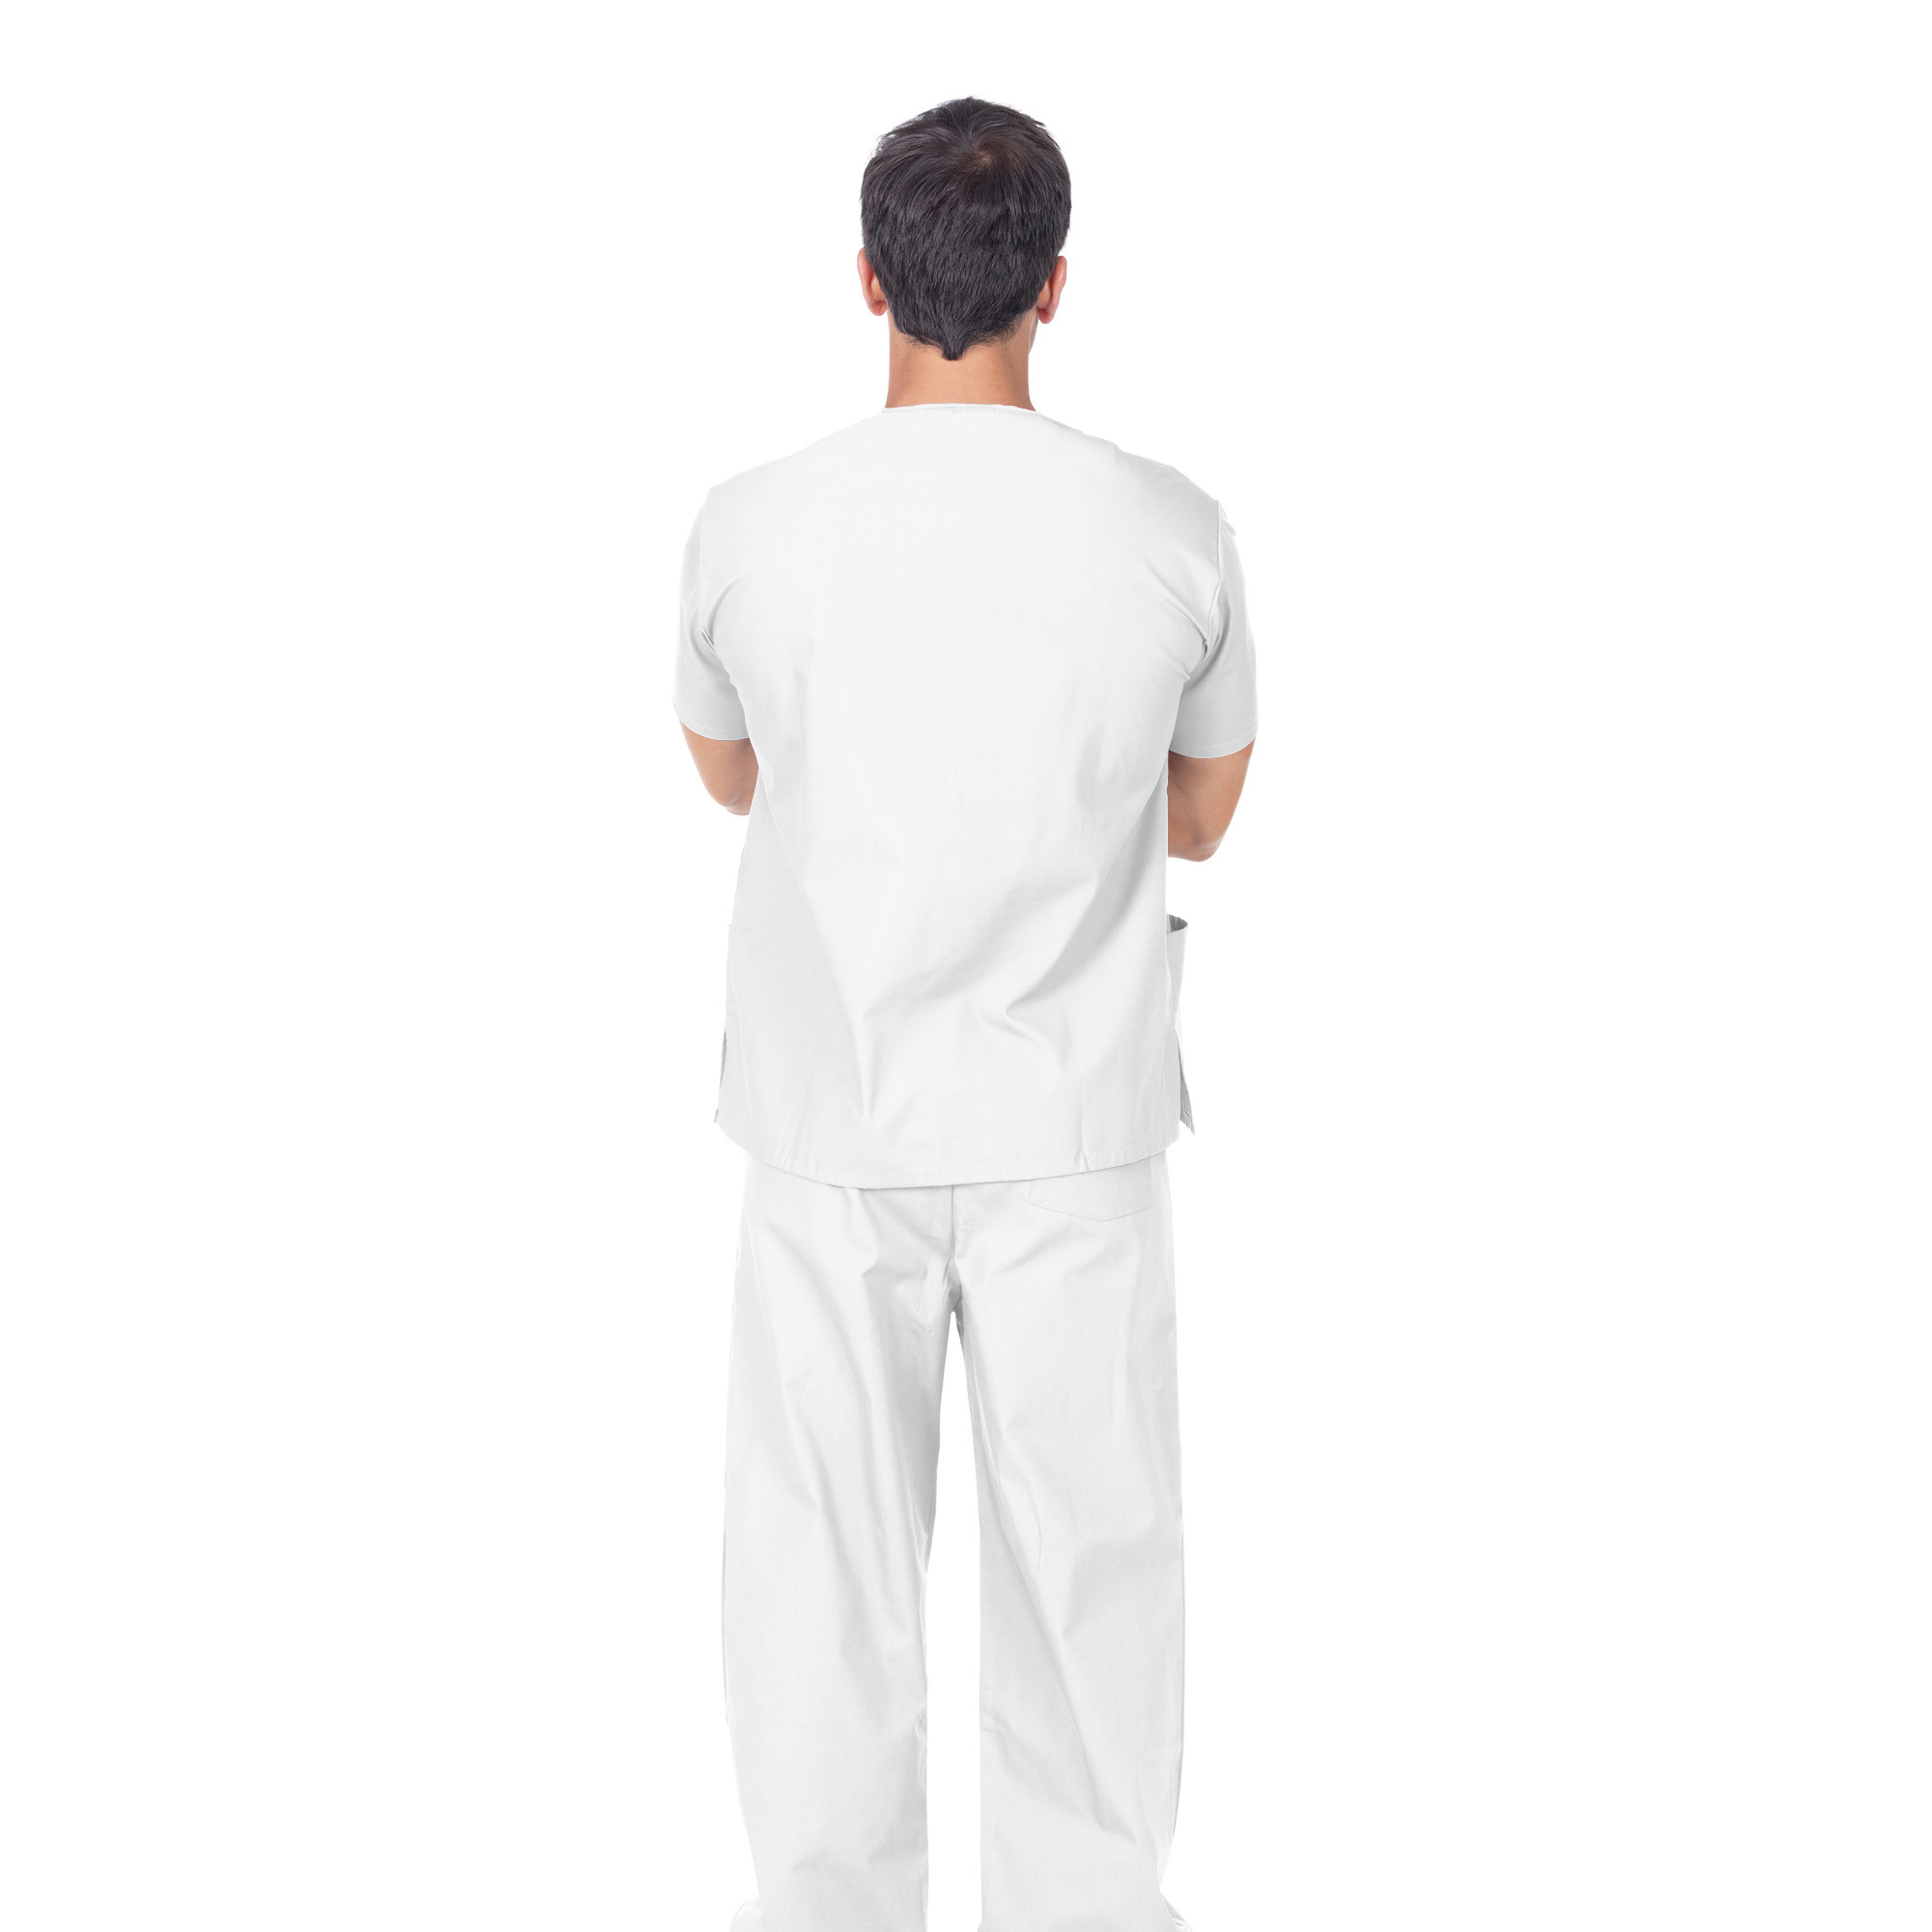 Pantaloni professionali in cotone bianco Unisex taglia Small